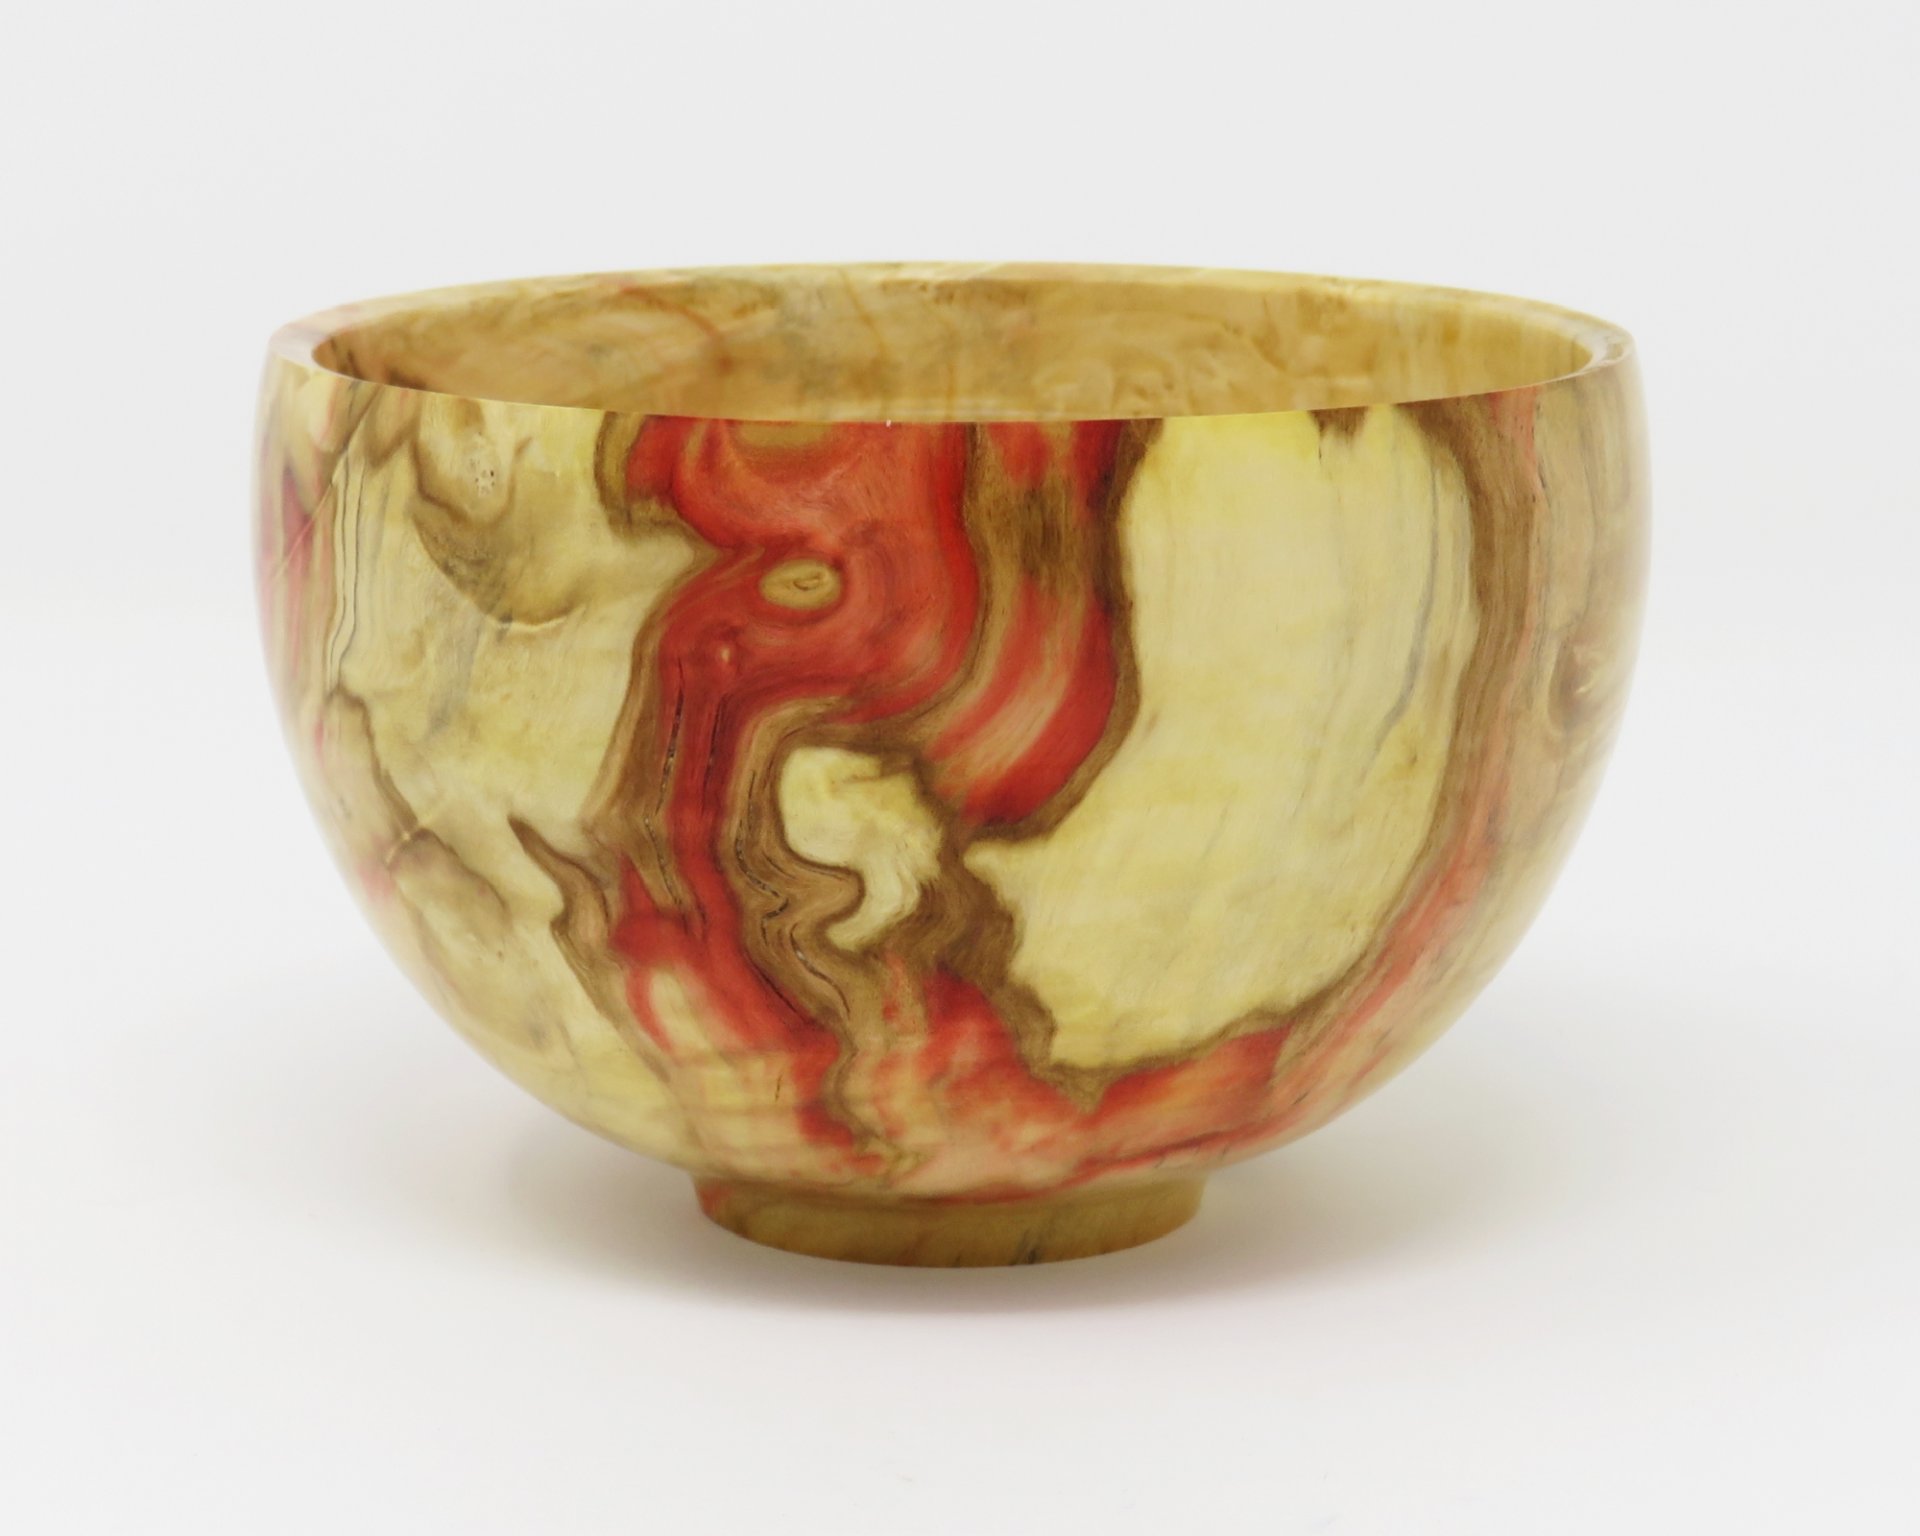 Japanese inspired bowl